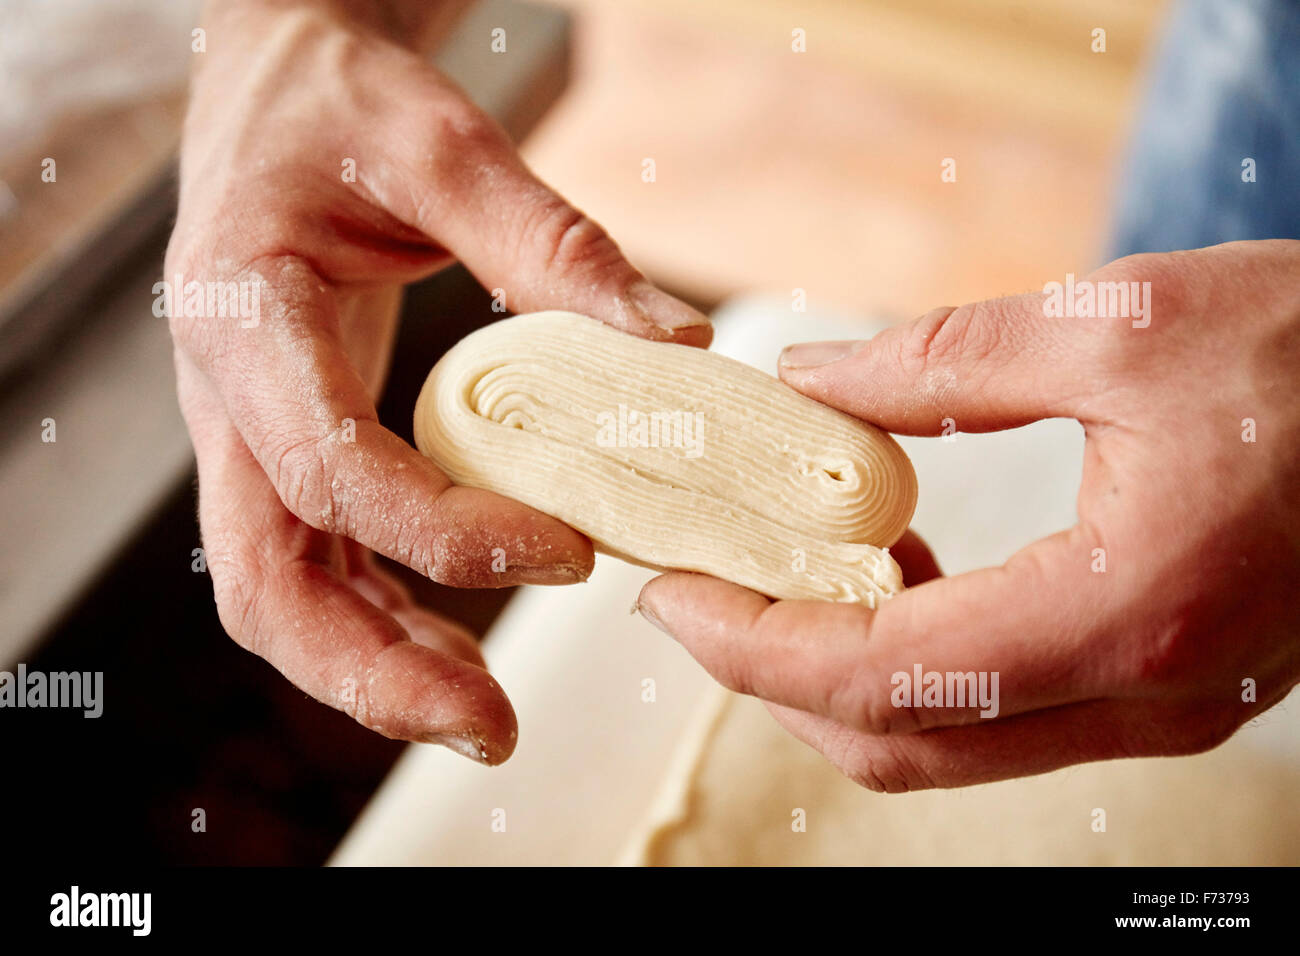 Un baker holding pâte qui a été plié et travaillé pour montrer les couches incorporées dans la pâte, pour préparer des pâtisseries en couches de lumière. Banque D'Images